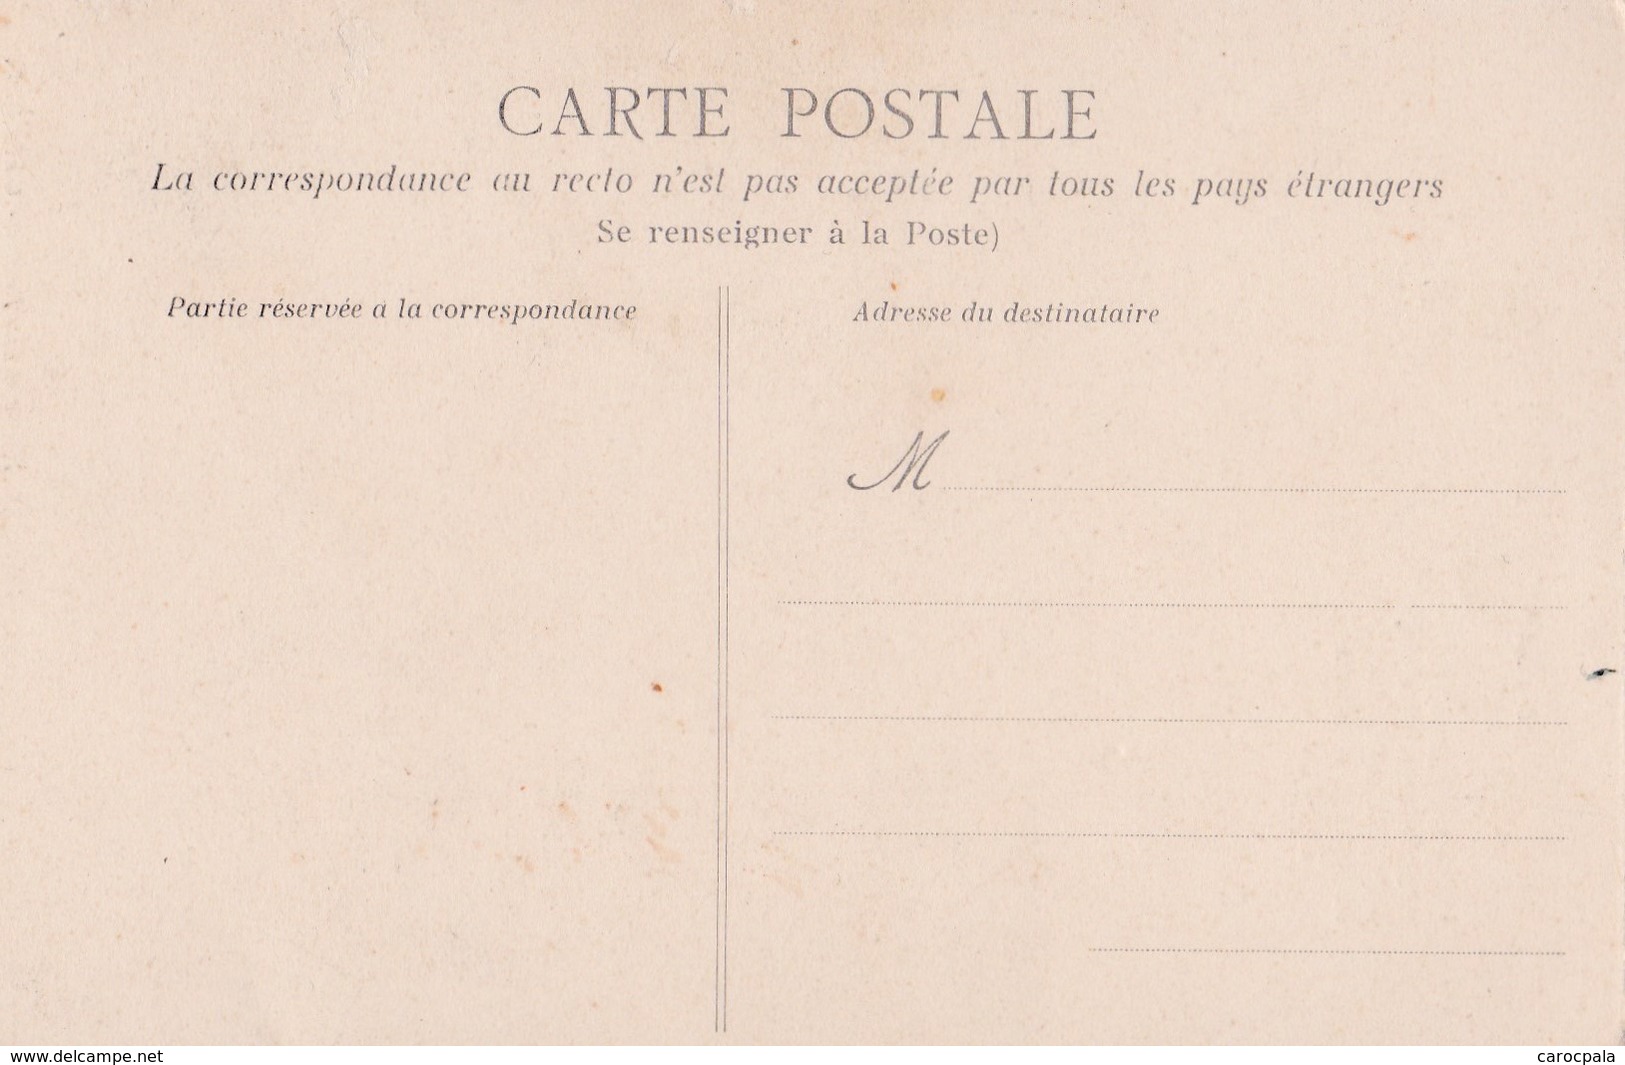 cartes 1905 série " la mort de flon-flon" : chien , cuisine , fouet ,patisserie,curé